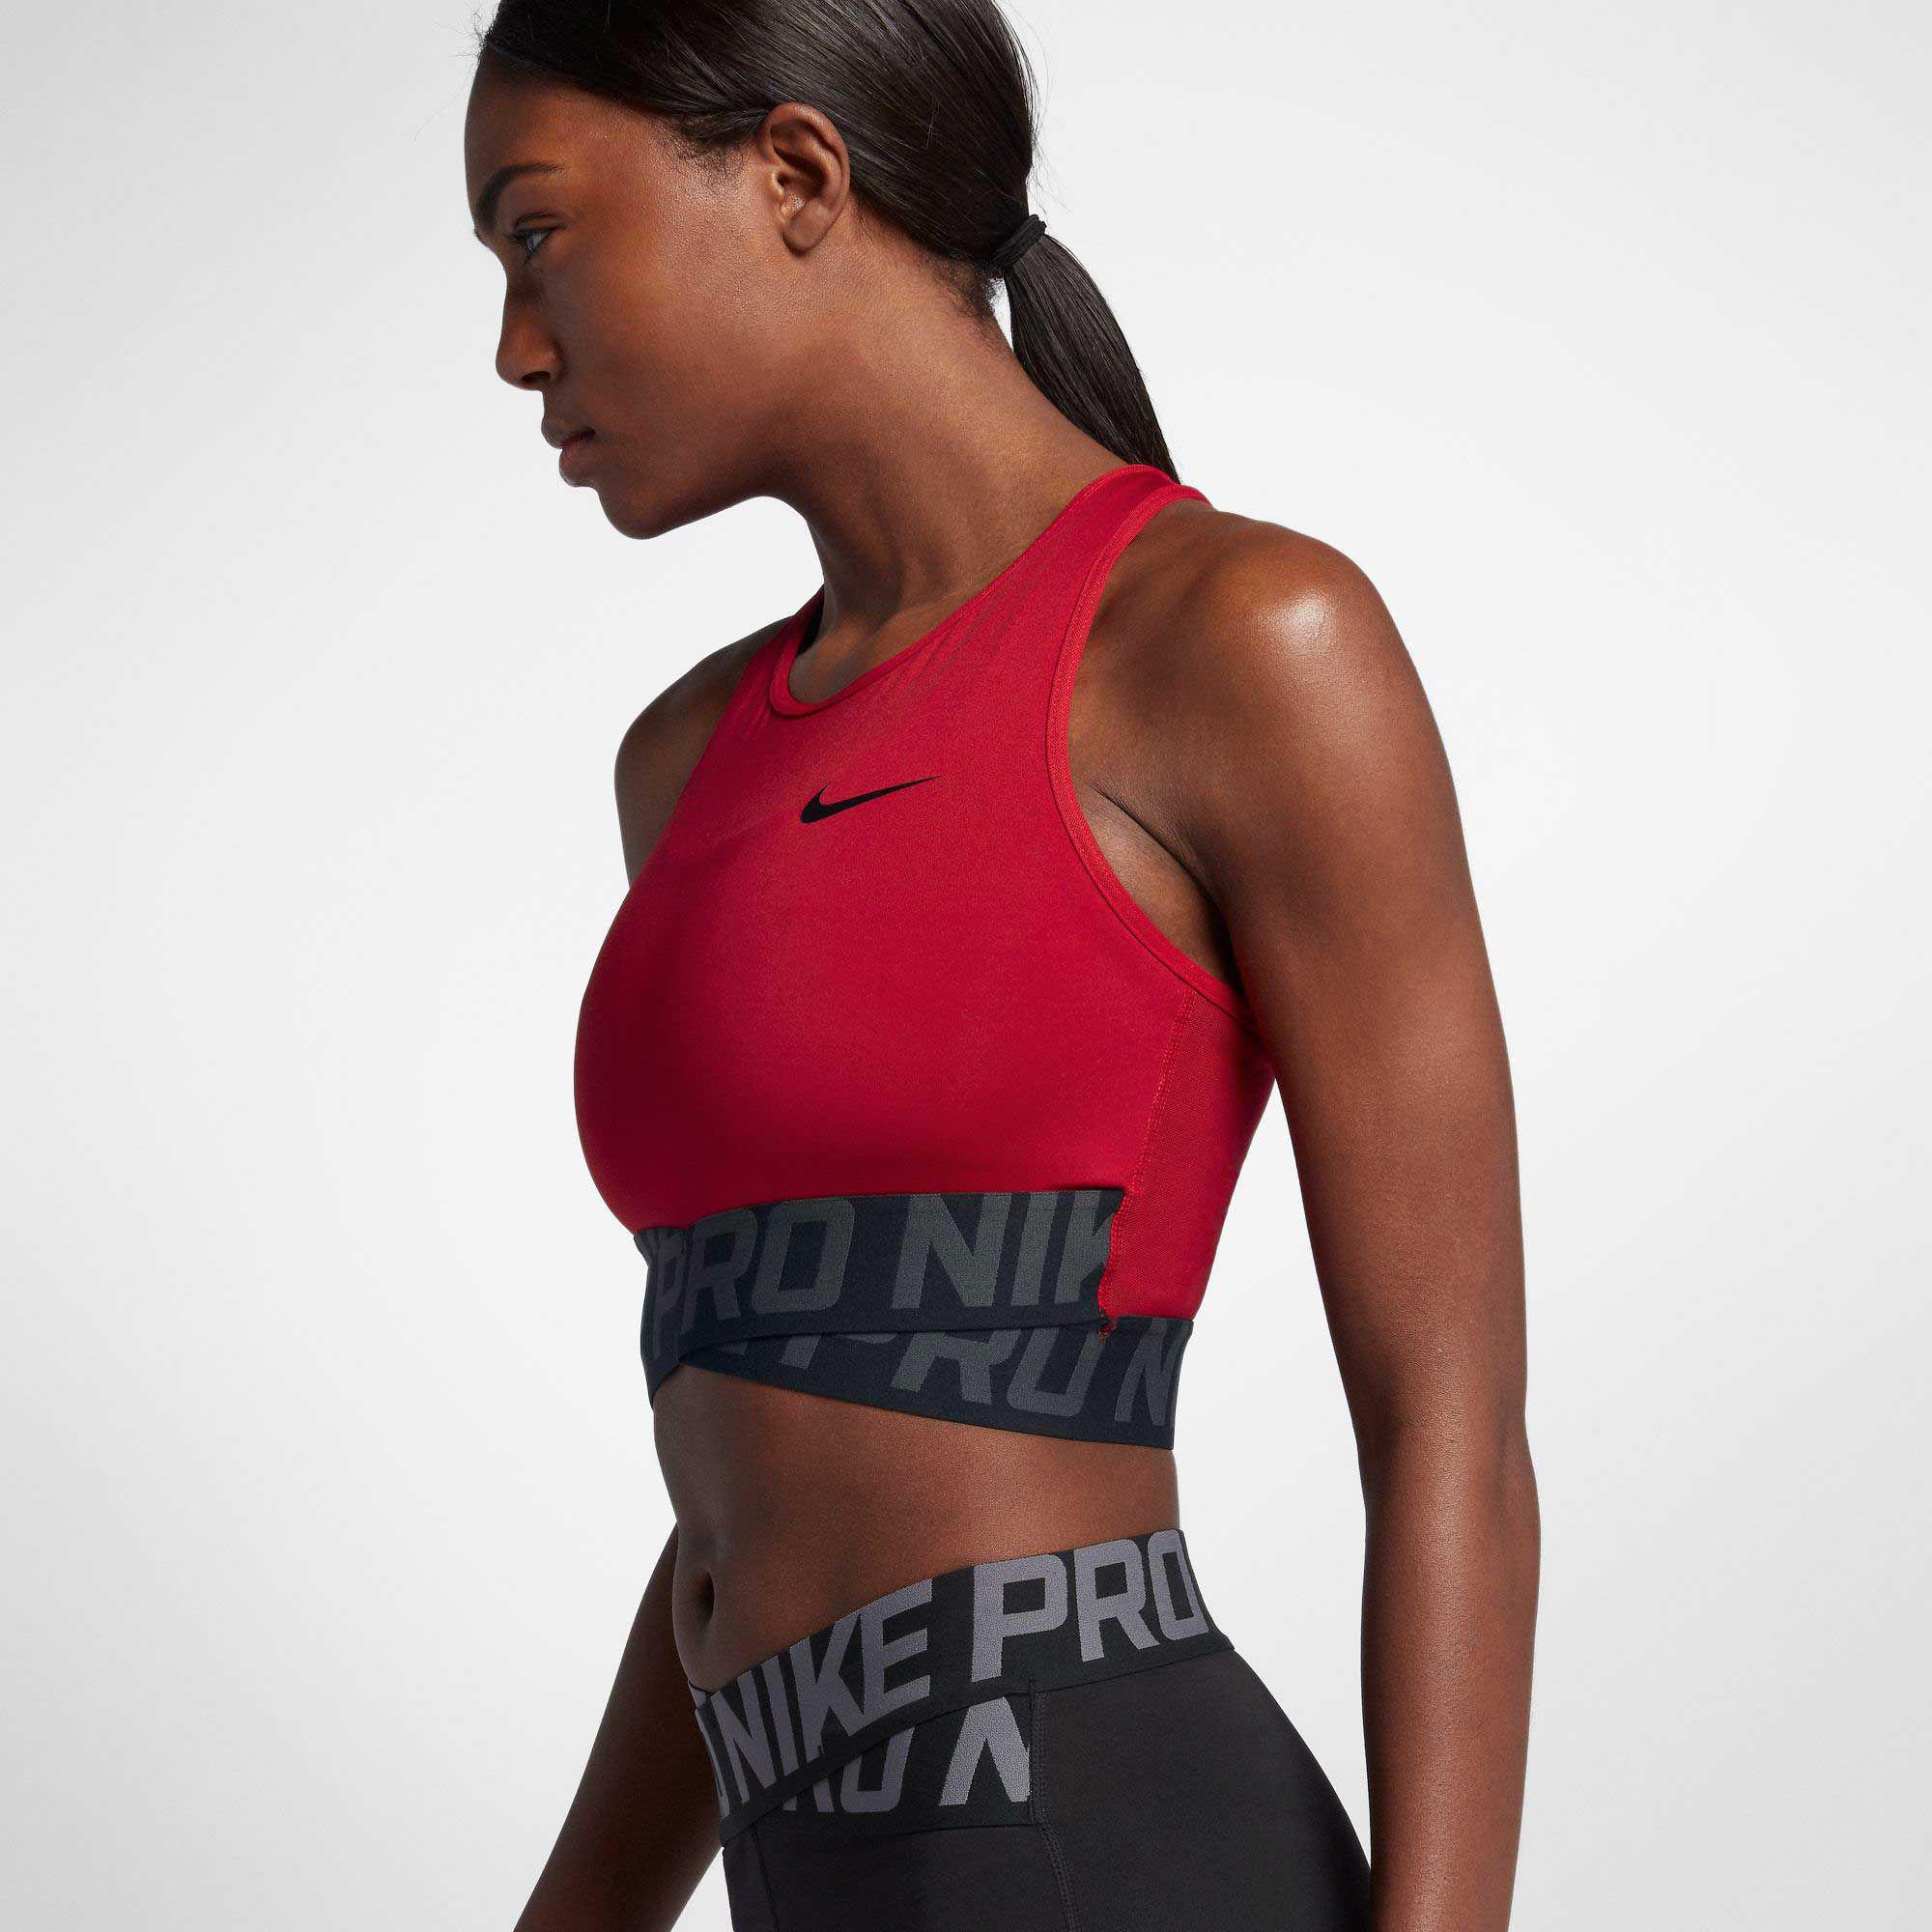 Nike Pro Intertwist Tank Top Deals, 53% OFF | www.ingeniovirtual.com